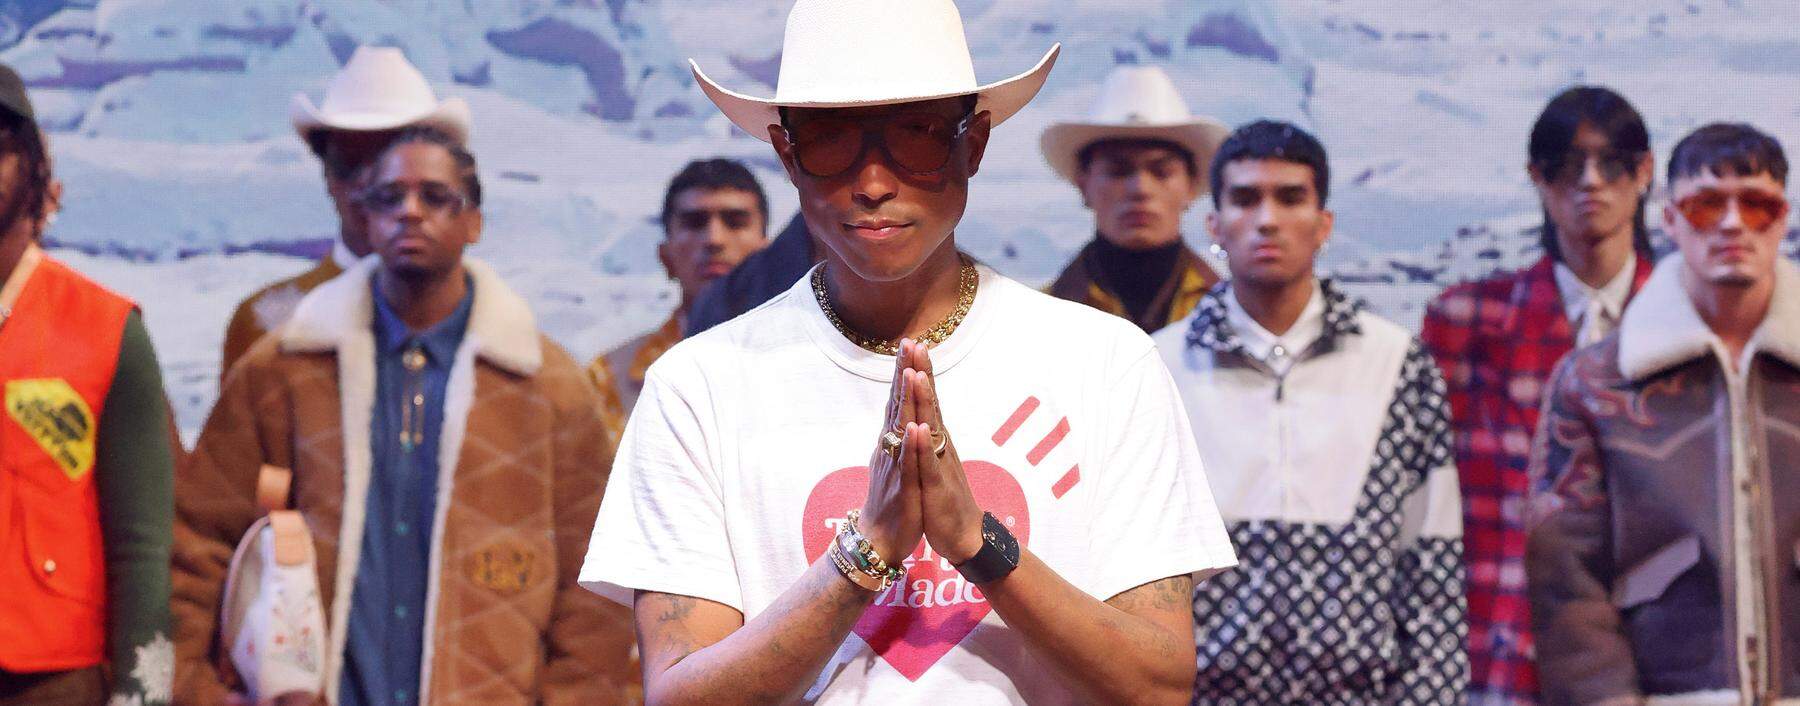 Ein Superstar, und doch so „humble“: Pharrell Williams beruft sich auf seine Wurzeln in Virginia.